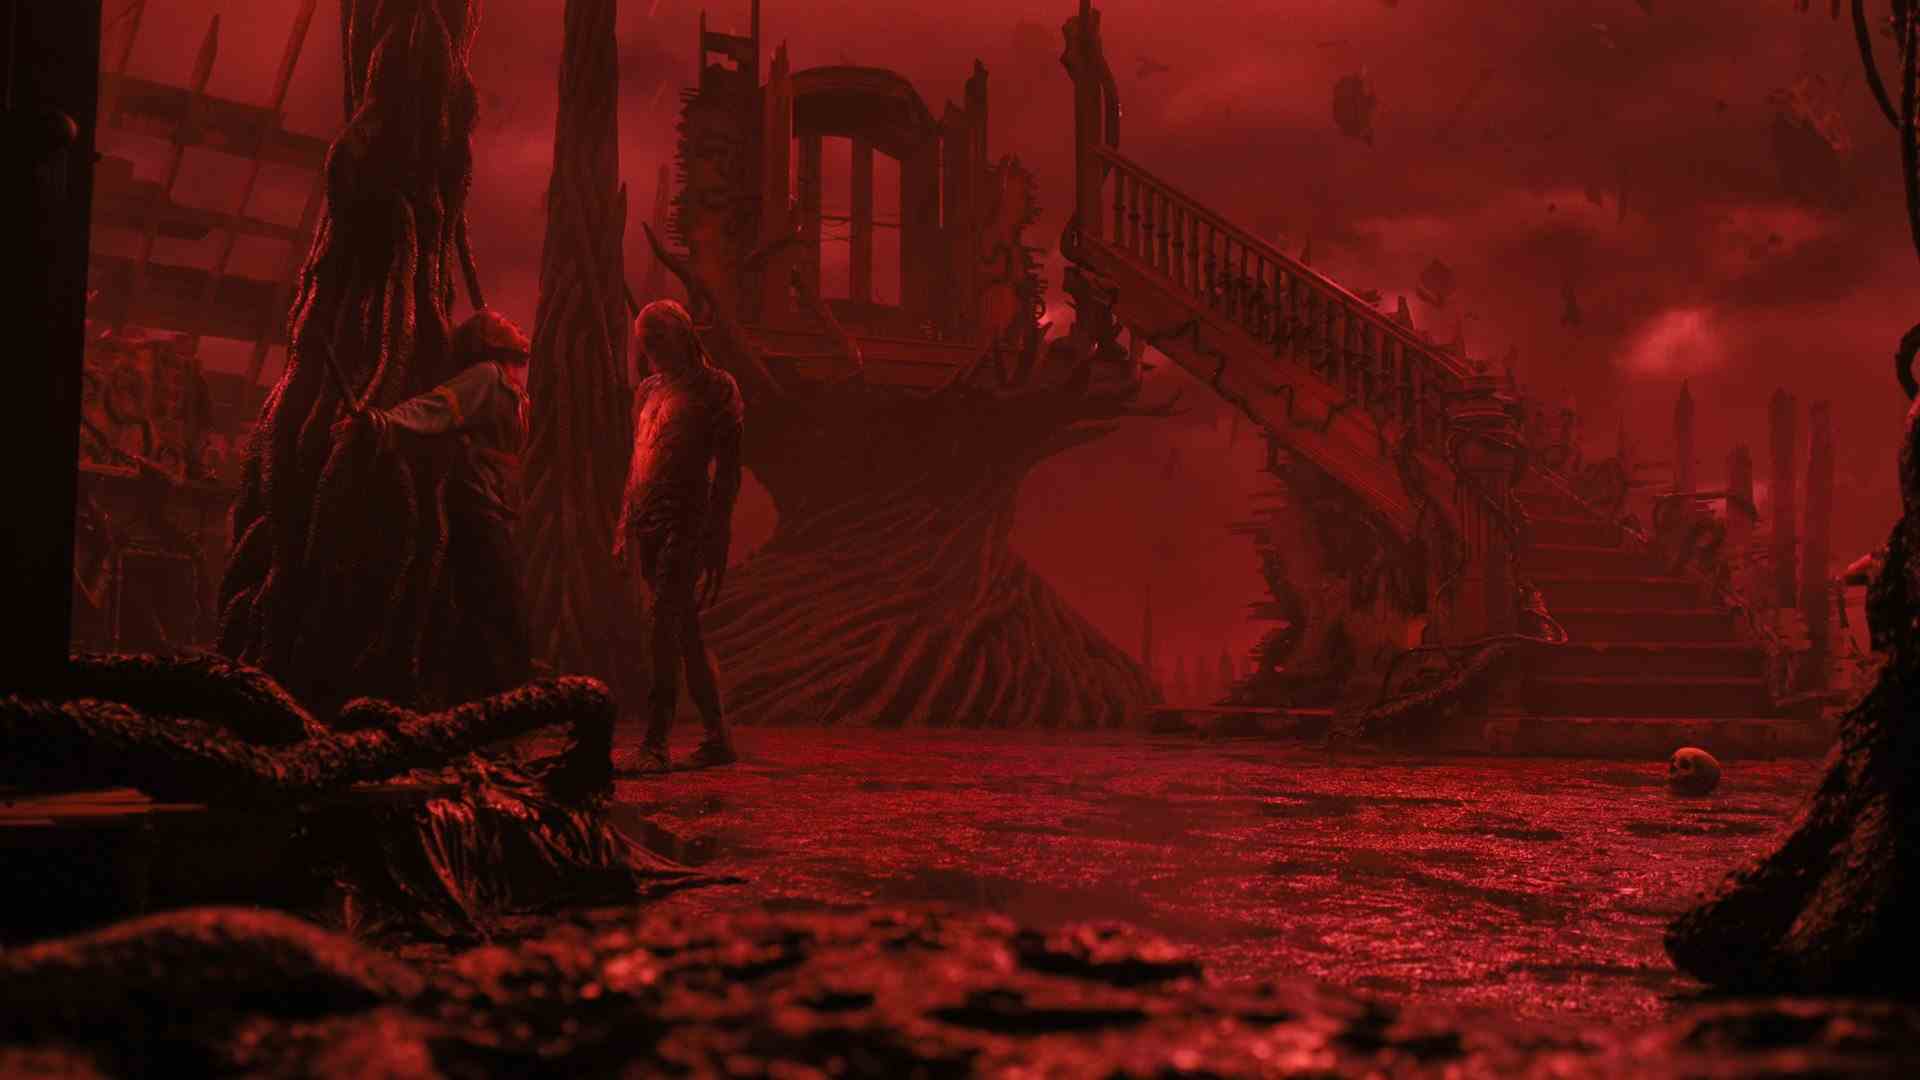 Les os d'une maison reposent dans un monde teinté de rouge alors qu'une créature ressemblant à un humain marche vers une fille réticente.